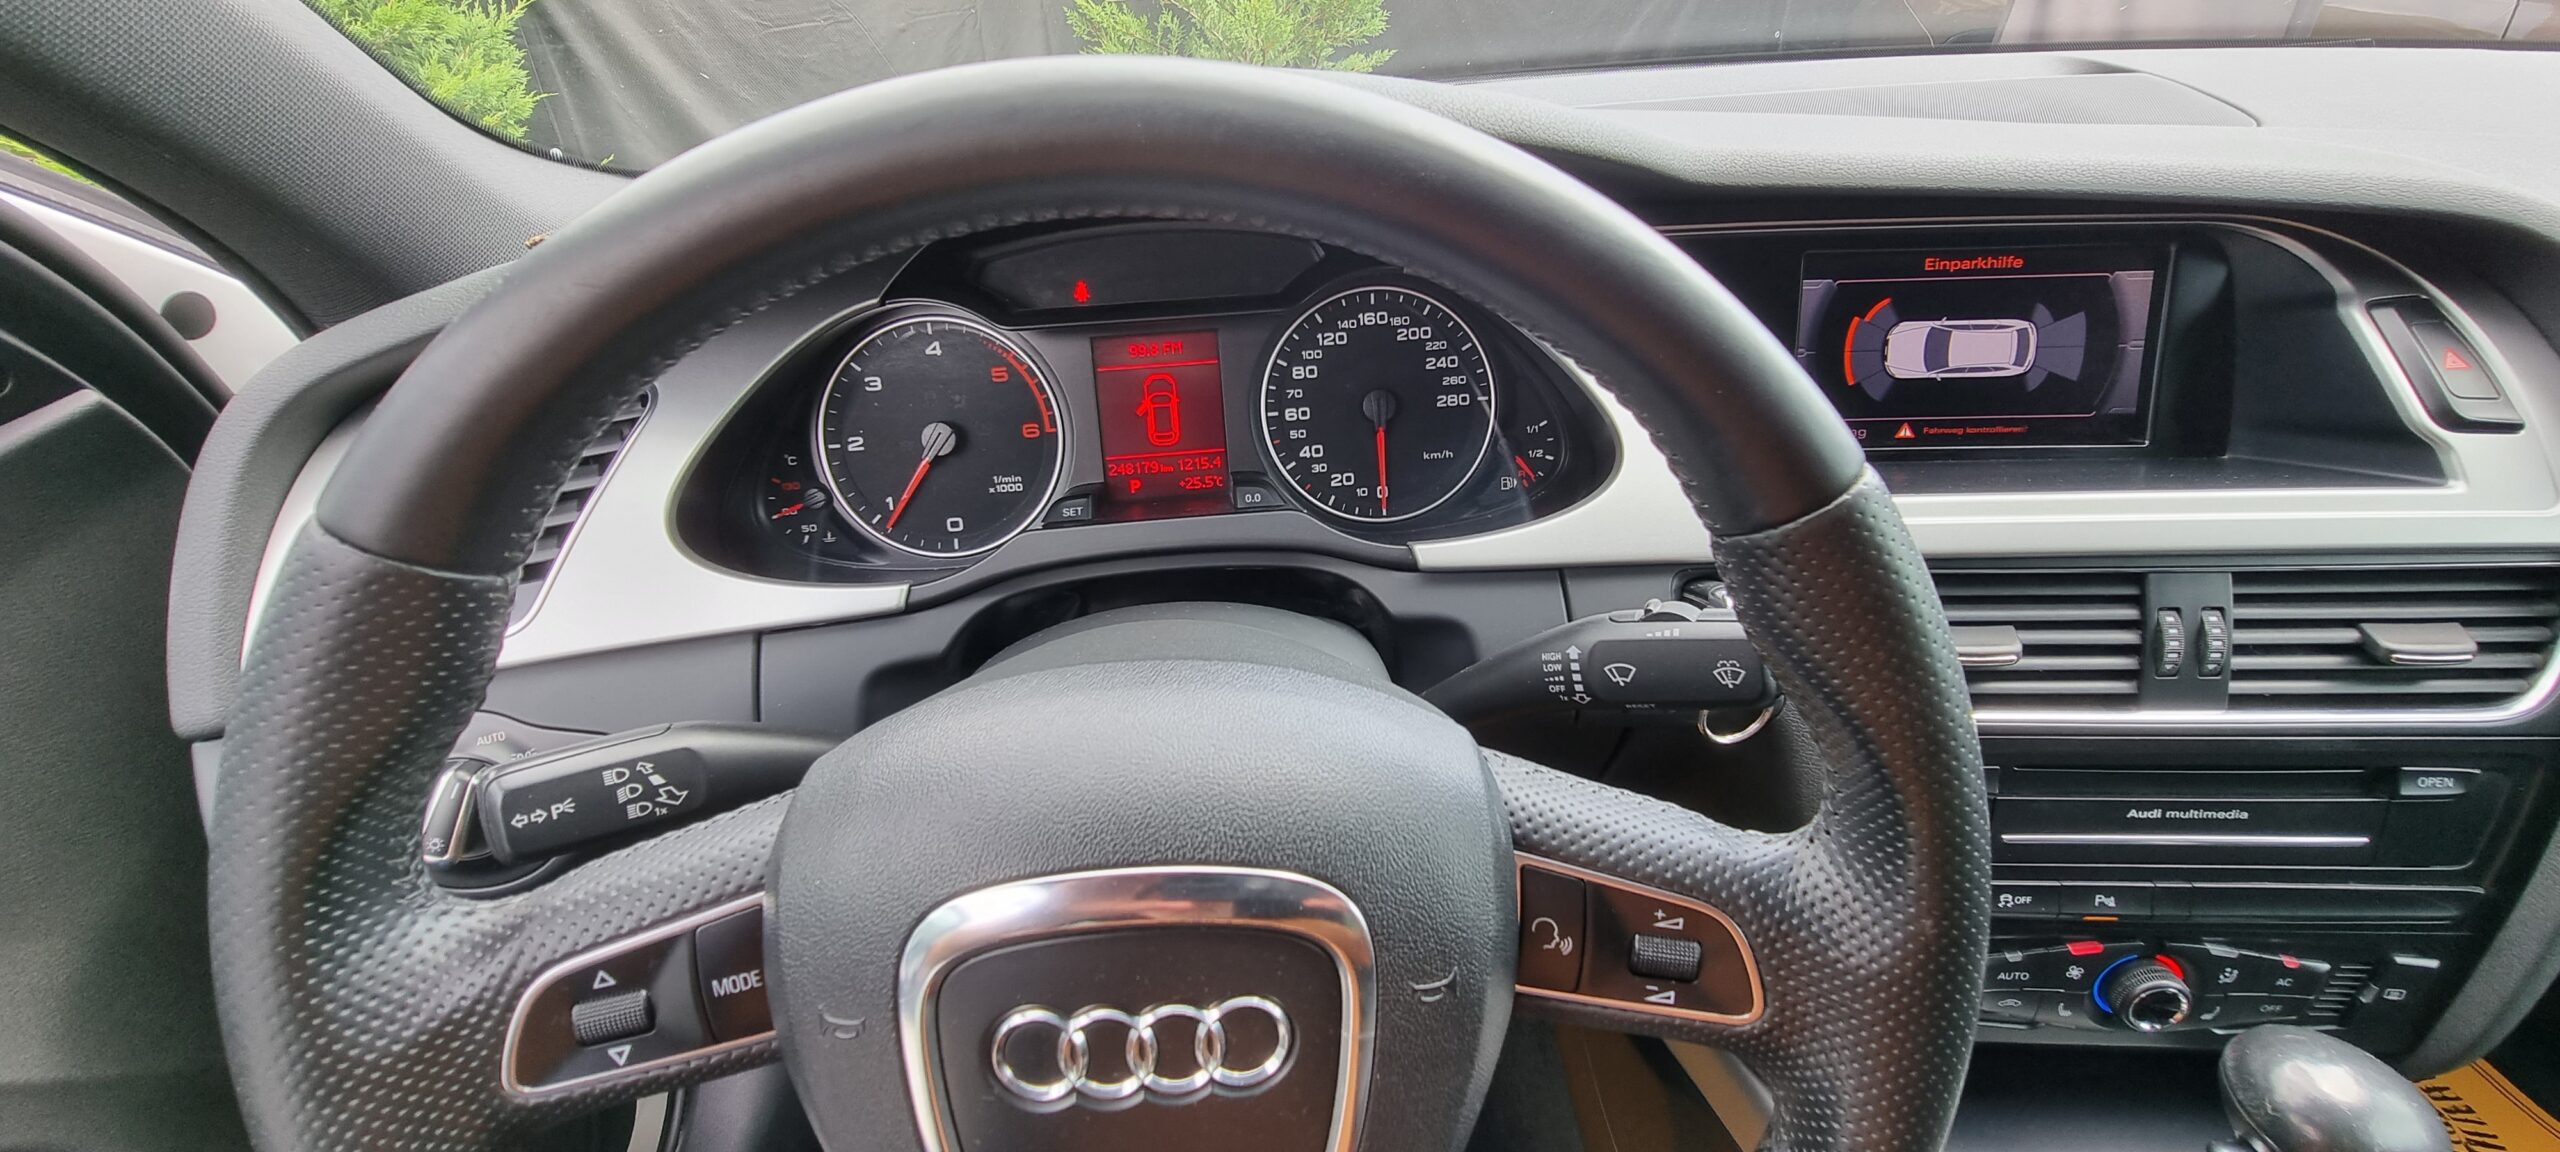 Audi A4 S-Line 2.0 TDI